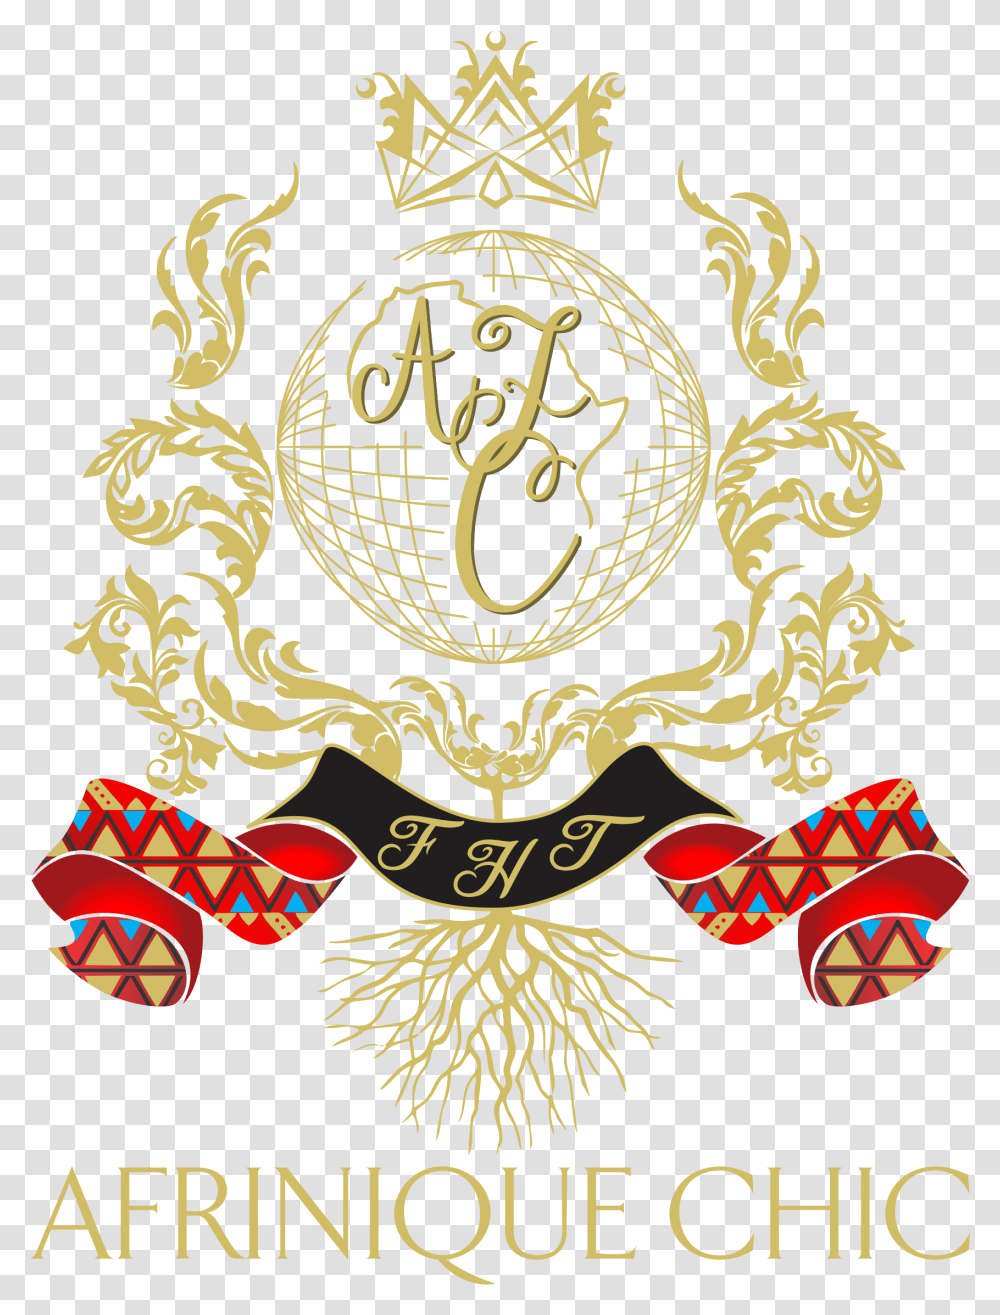 Angelic Reign De Ma Vie Queen Afriniquechic Illustration, Label, Text, Symbol, Emblem Transparent Png